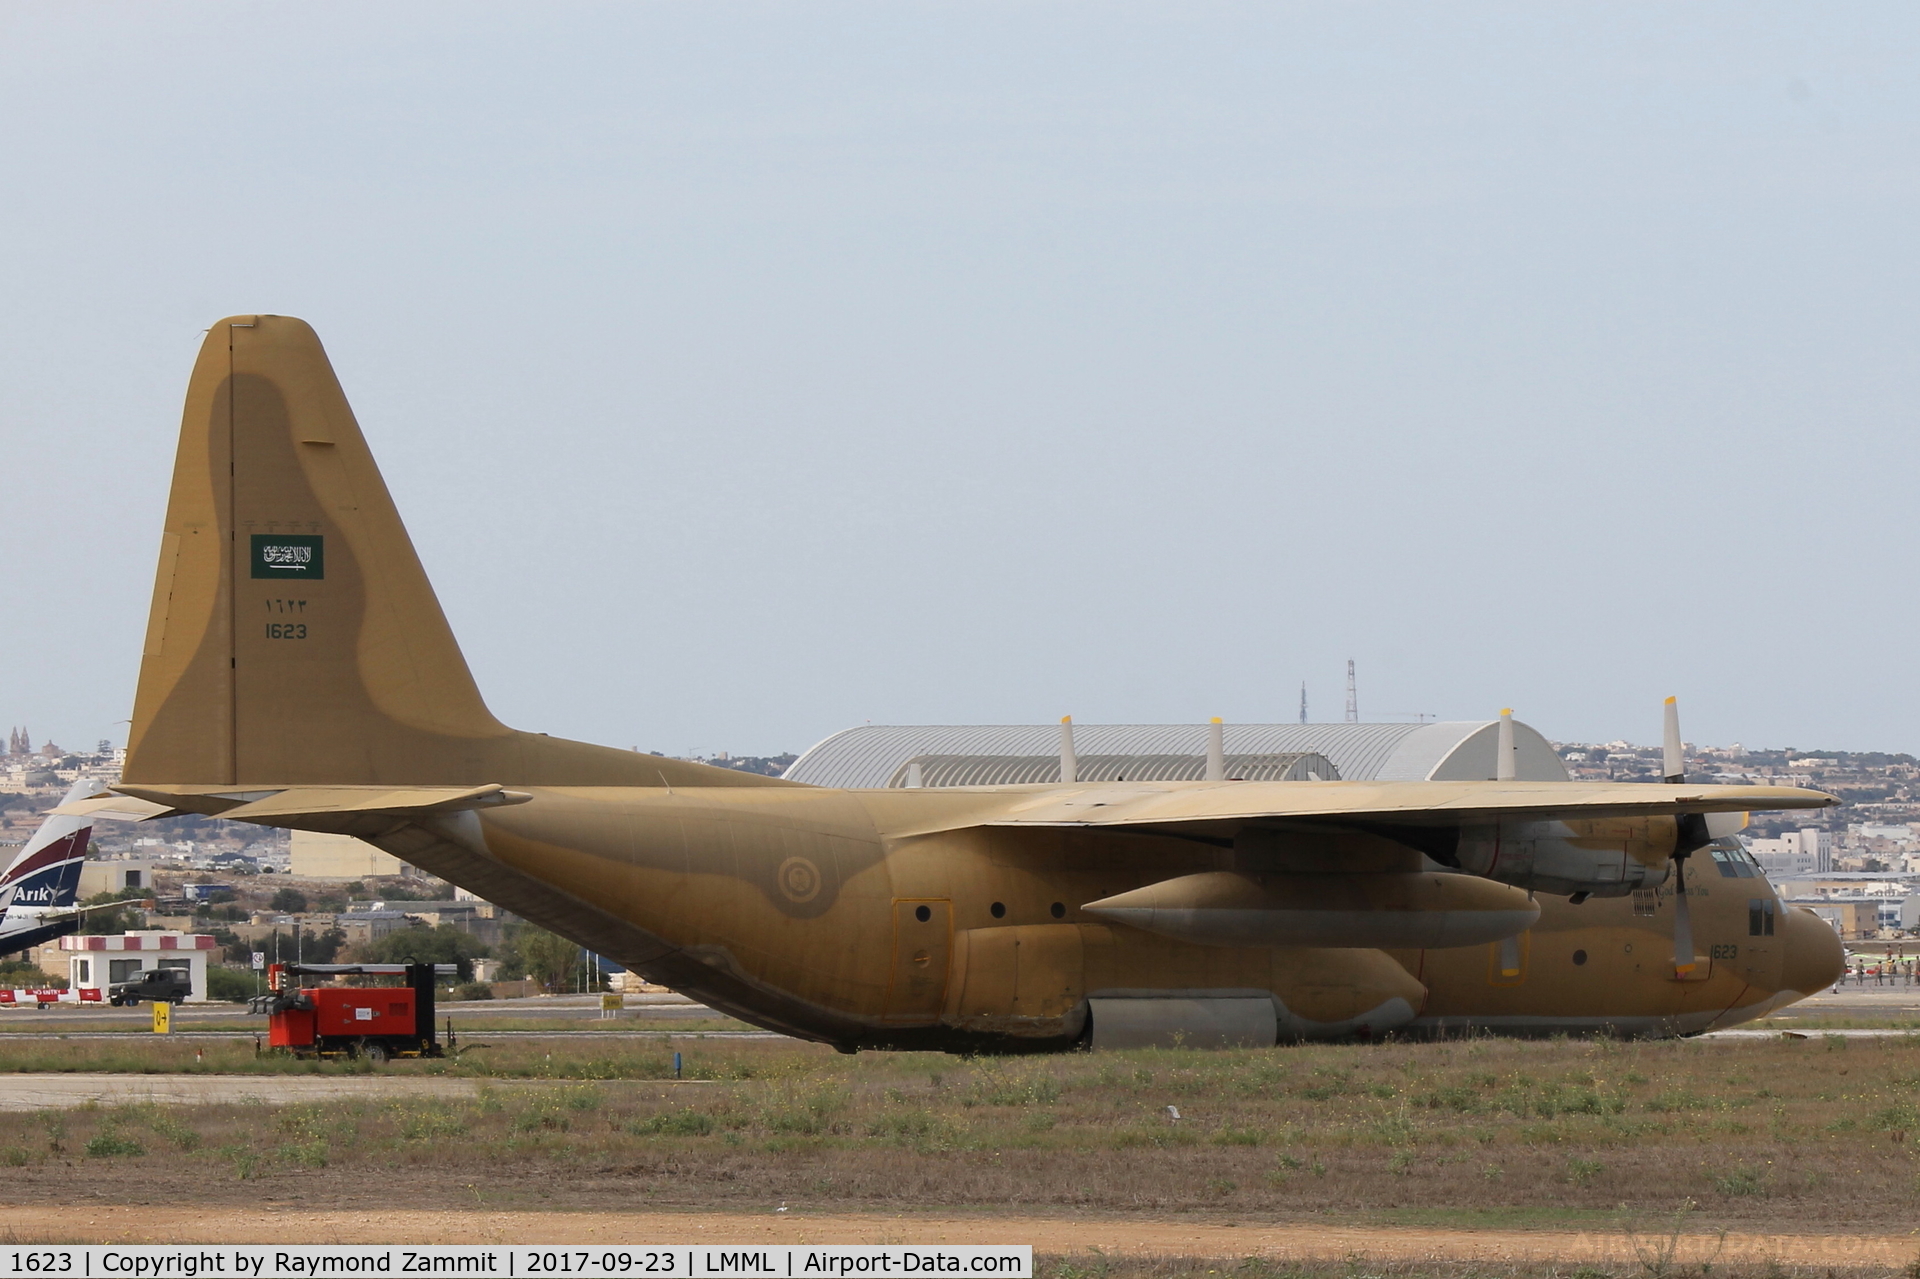 1623, 1992 Lockheed C-130H Hercules C/N 382-5254, Lockheed C-130H Hercules 1623 Royal Saudi Air Force